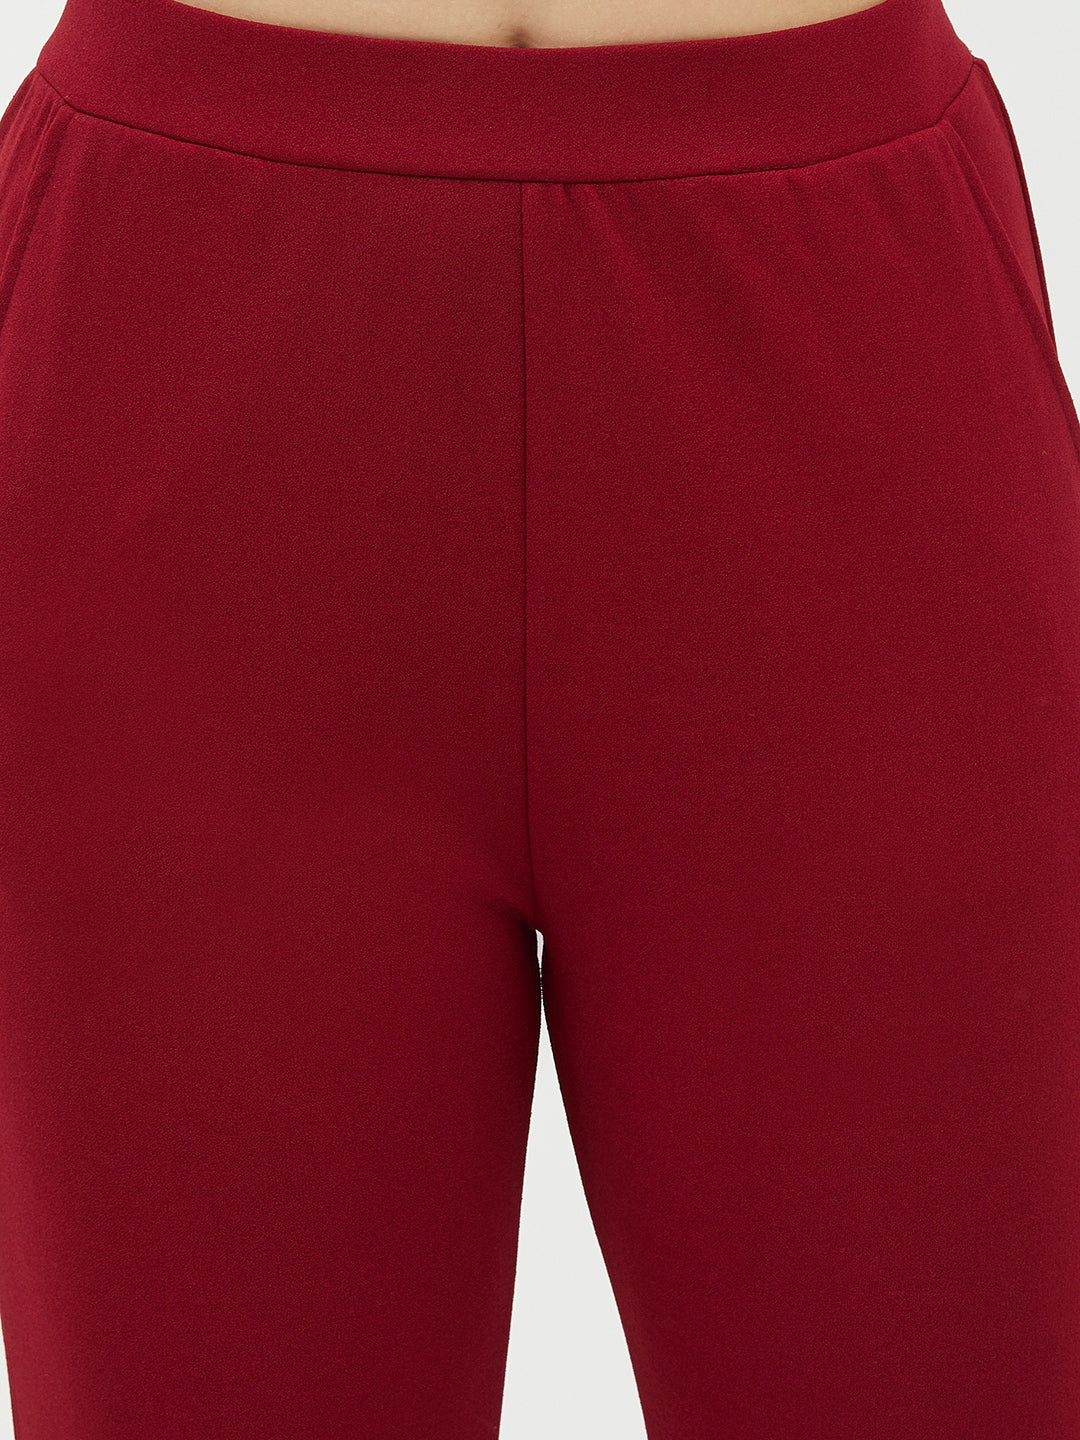 Women's Maroon Jogger Style Trousers - StyleStone